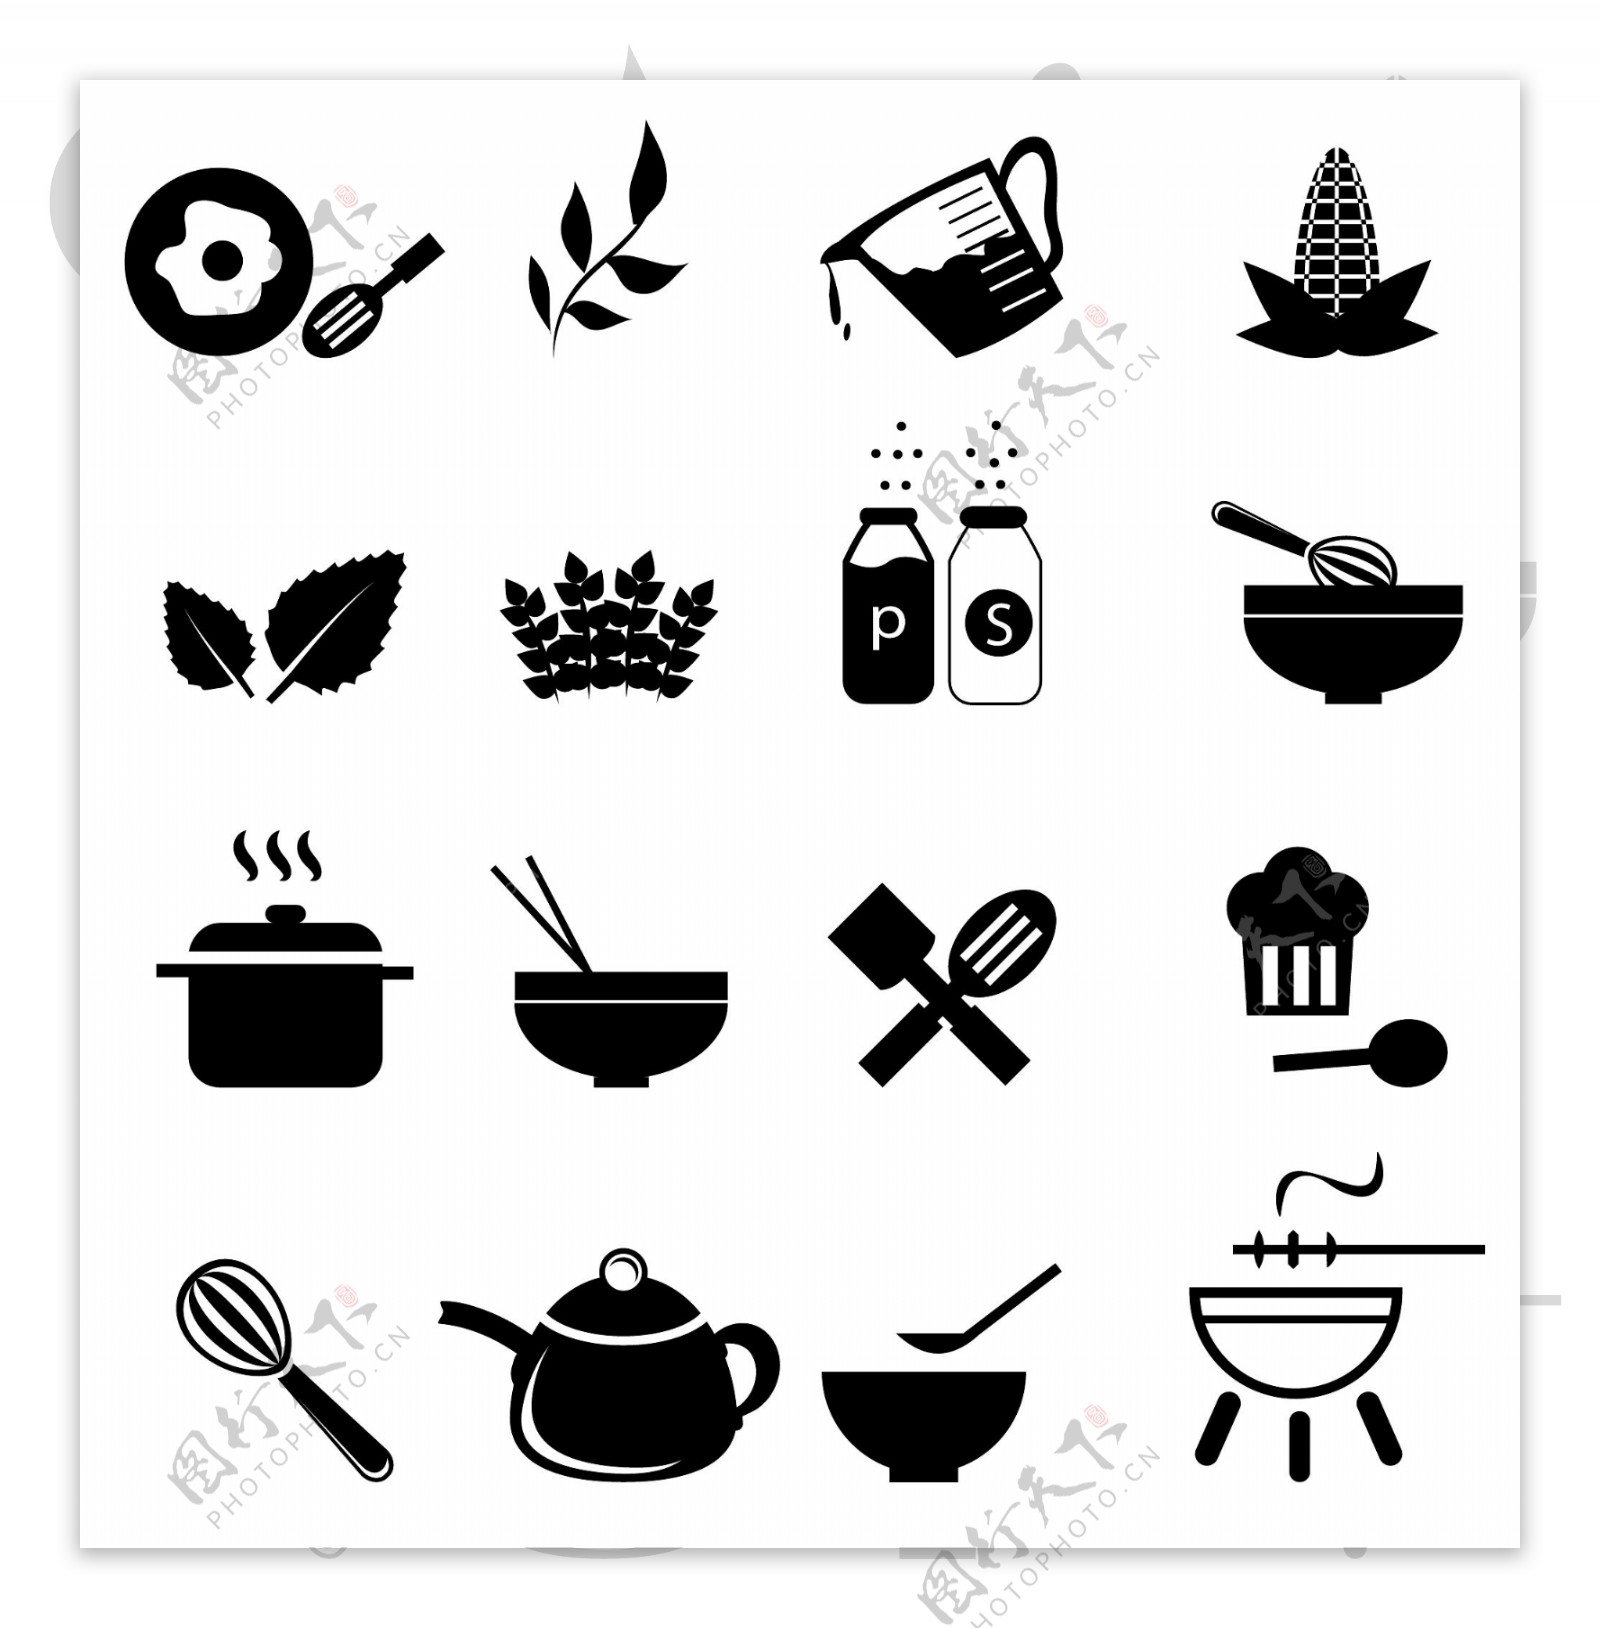 烹饪食材小图标图片